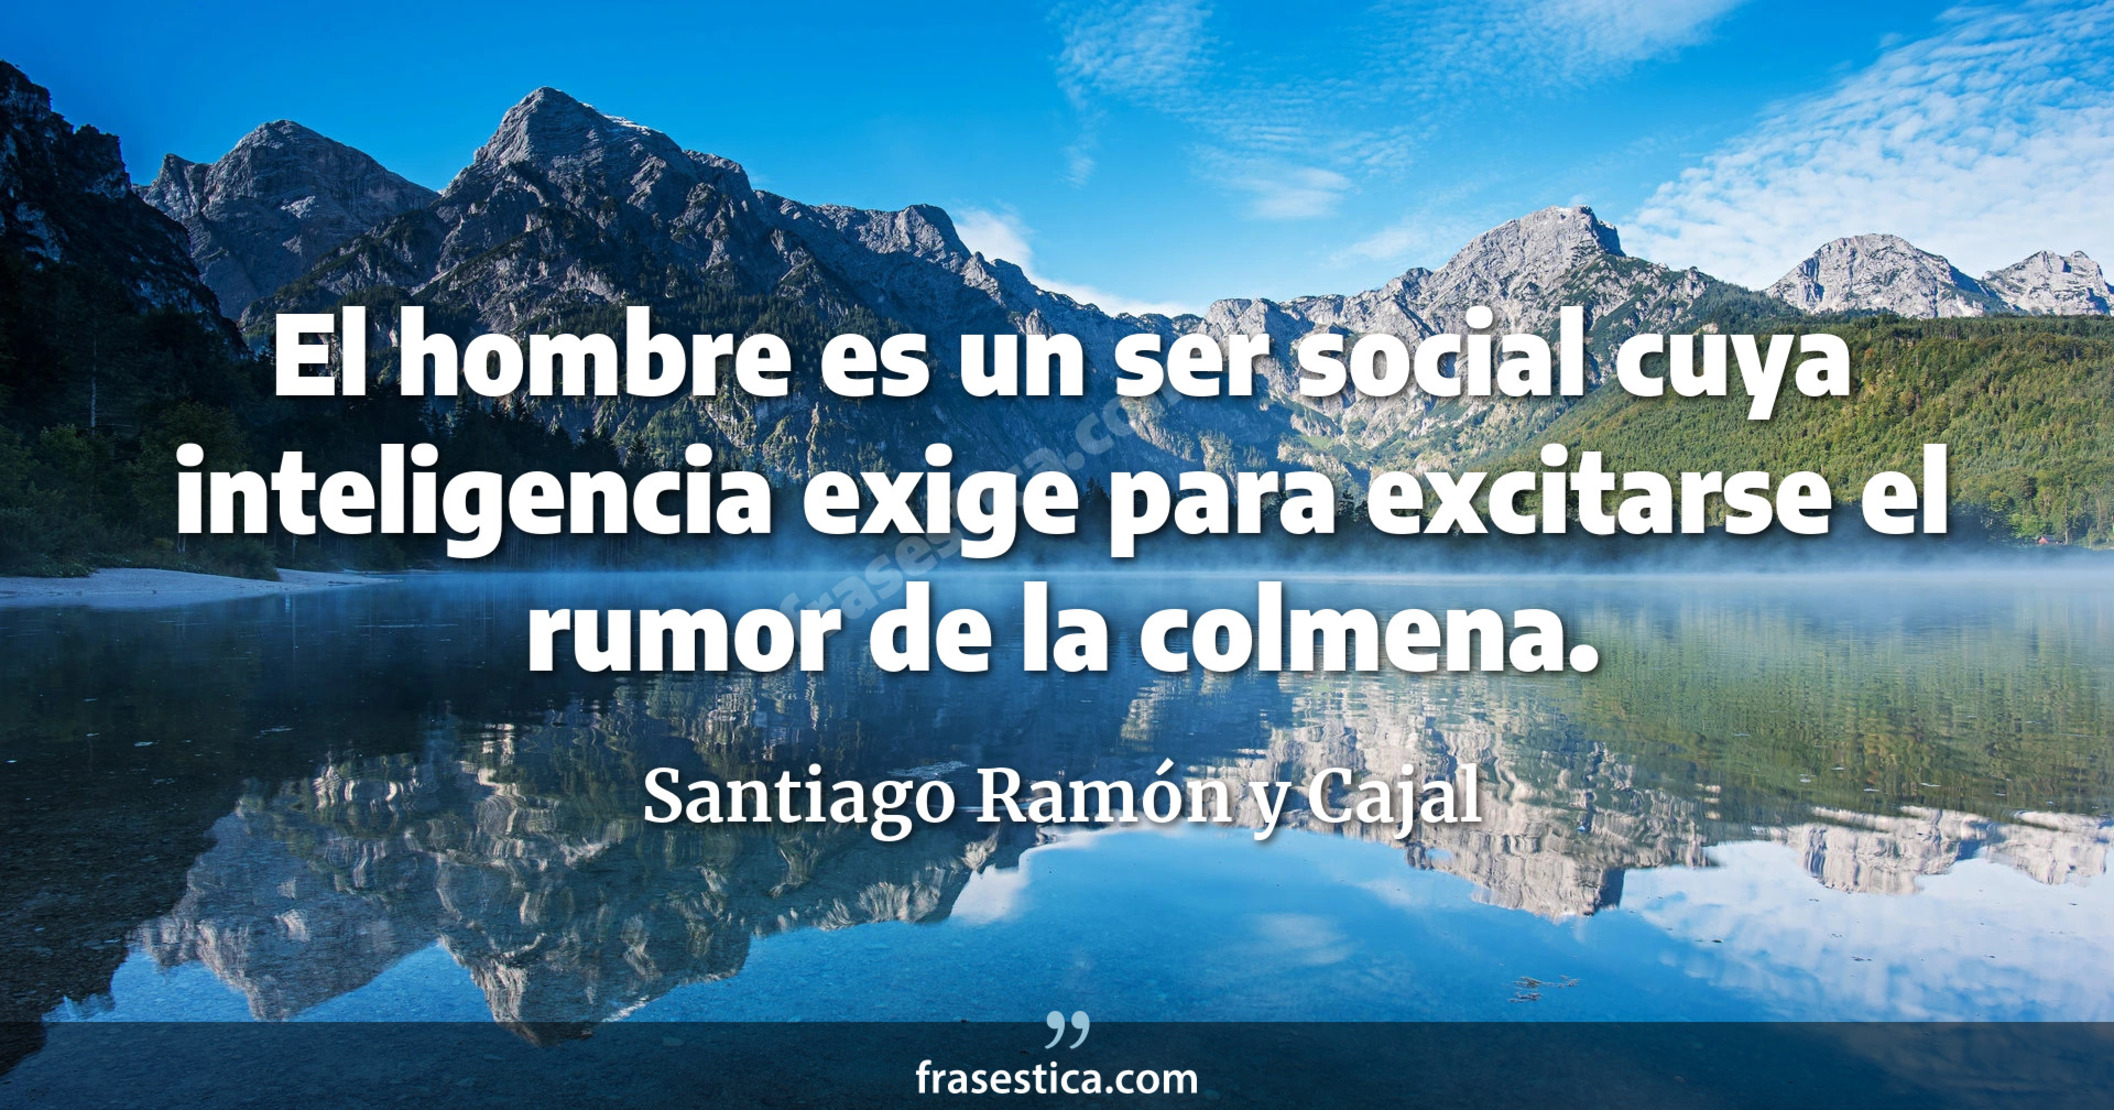 El hombre es un ser social cuya inteligencia exige para excitarse el rumor de la colmena. - Santiago Ramón y Cajal